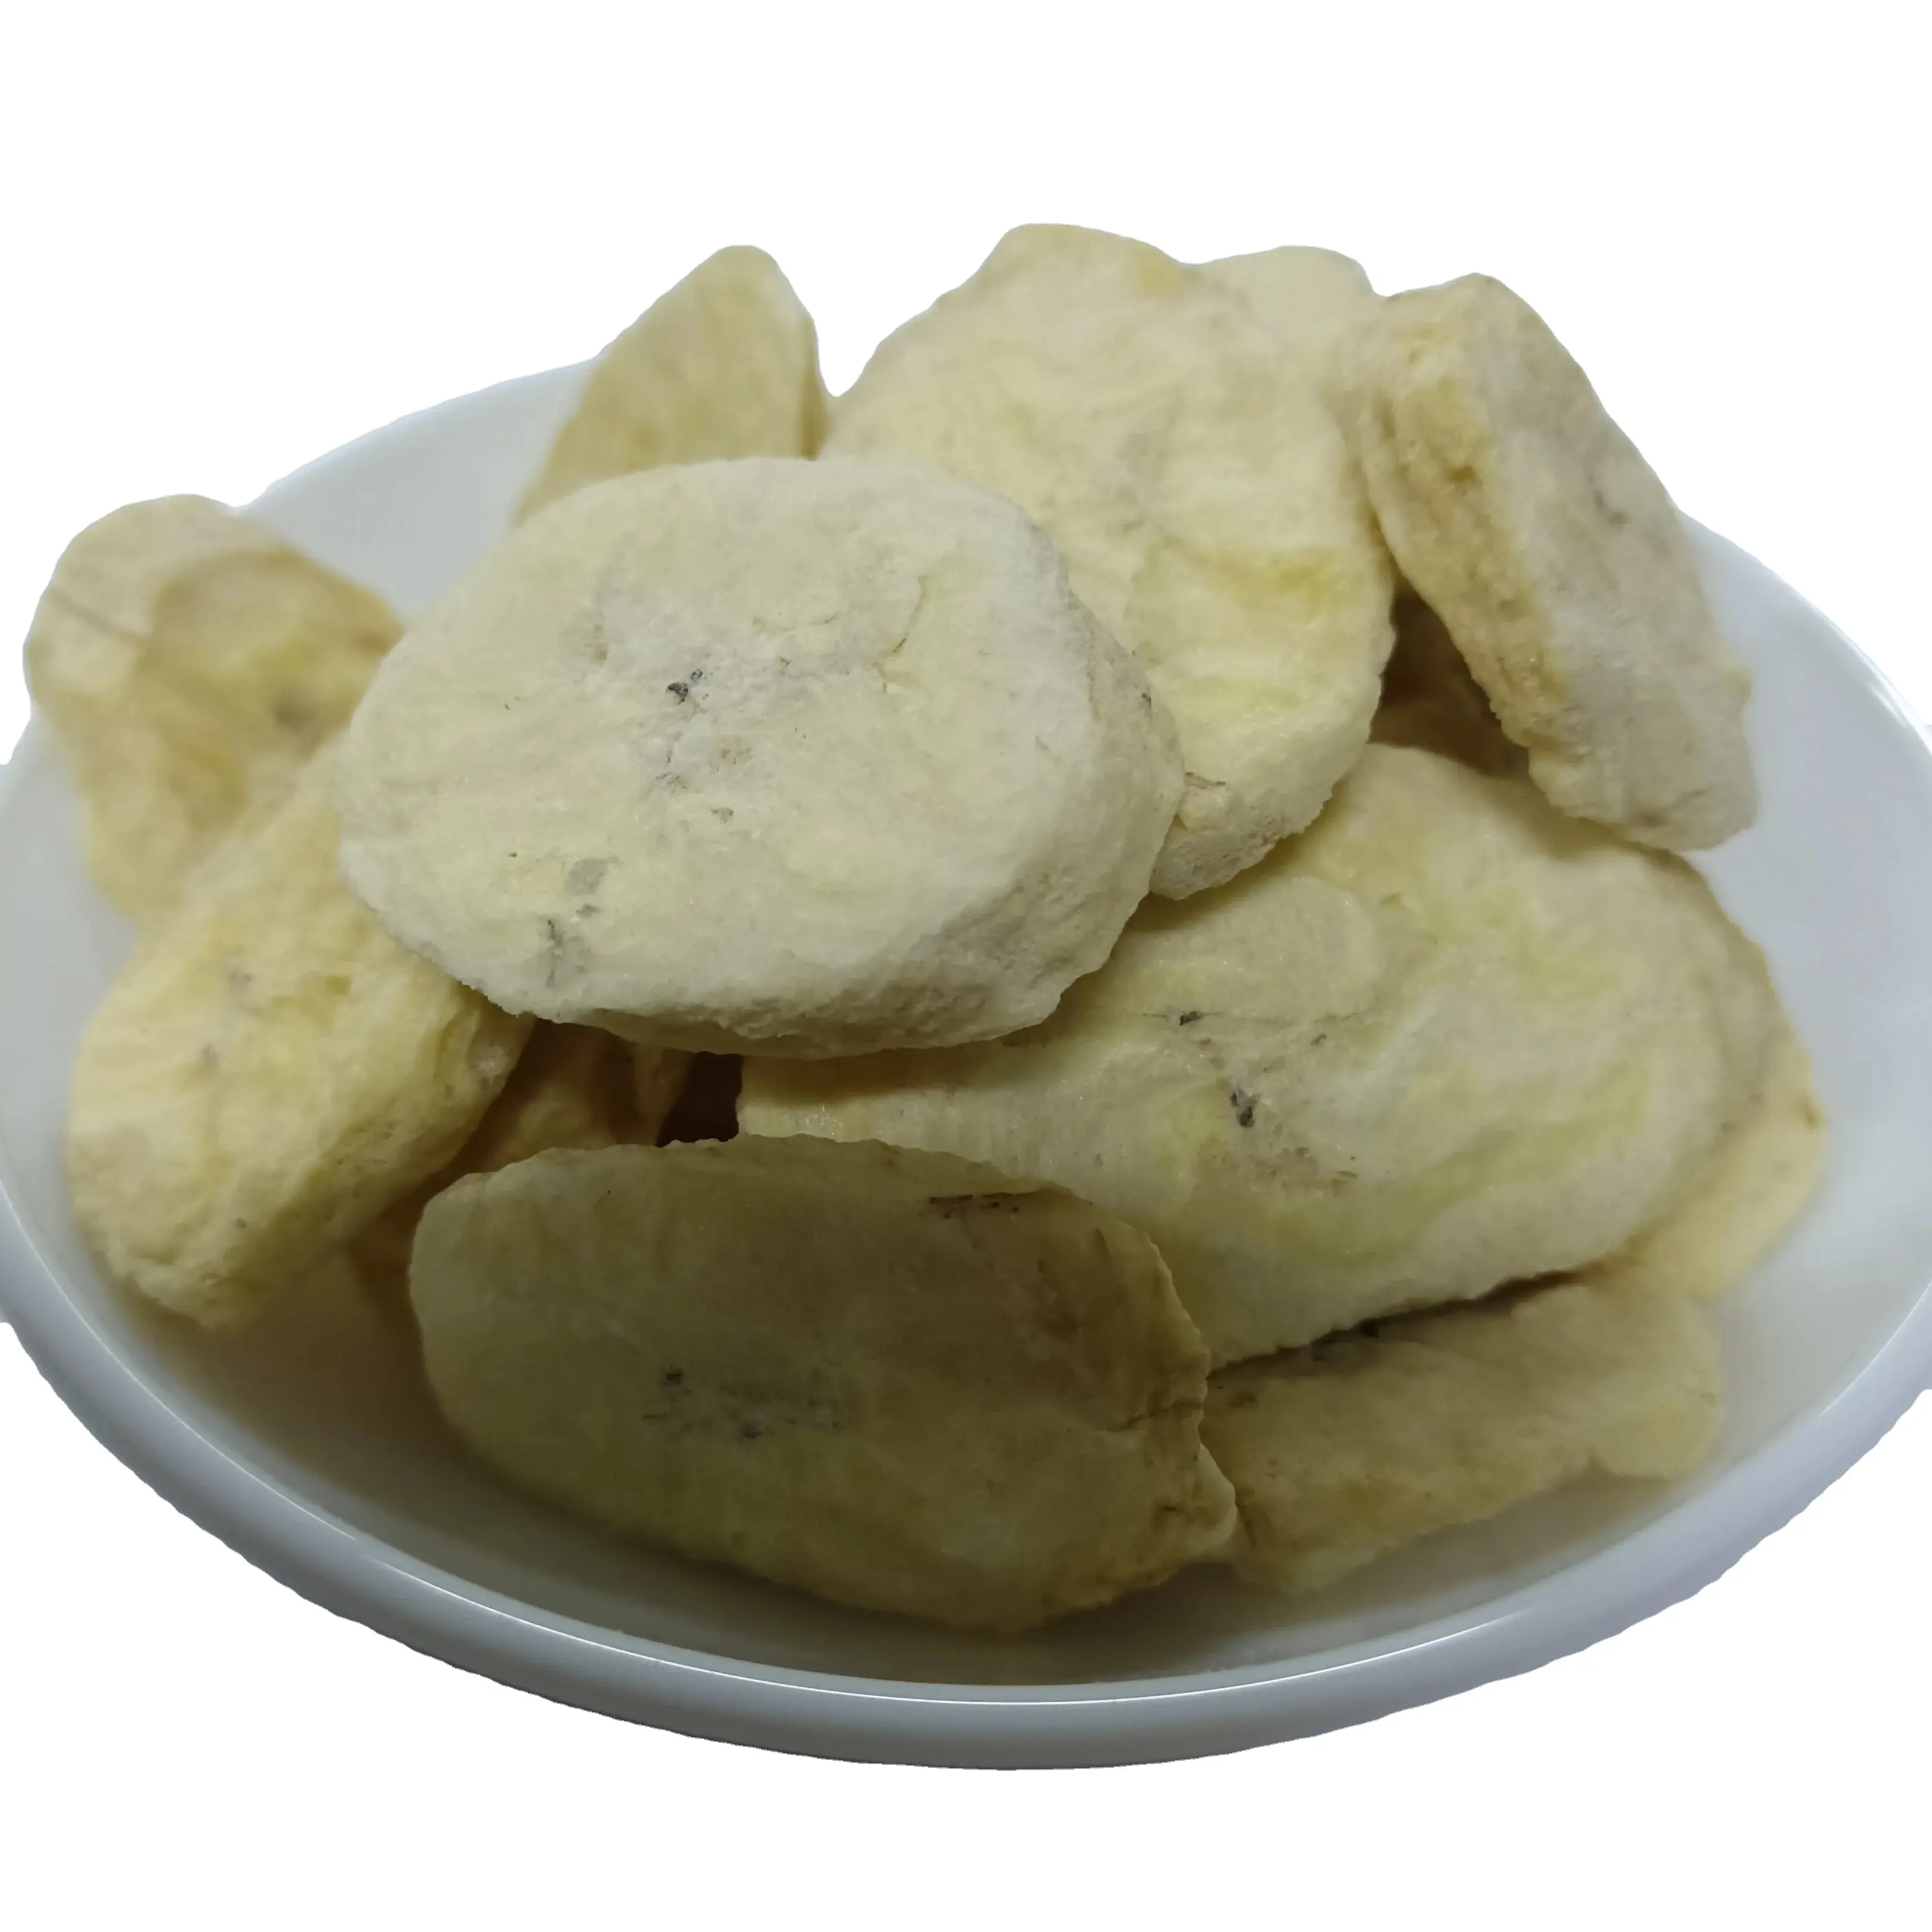 도매 동결 건조 바나나 주사위 분말 샘플 무료 건강한 레저 스낵 FD 식품 동결 건조 과일